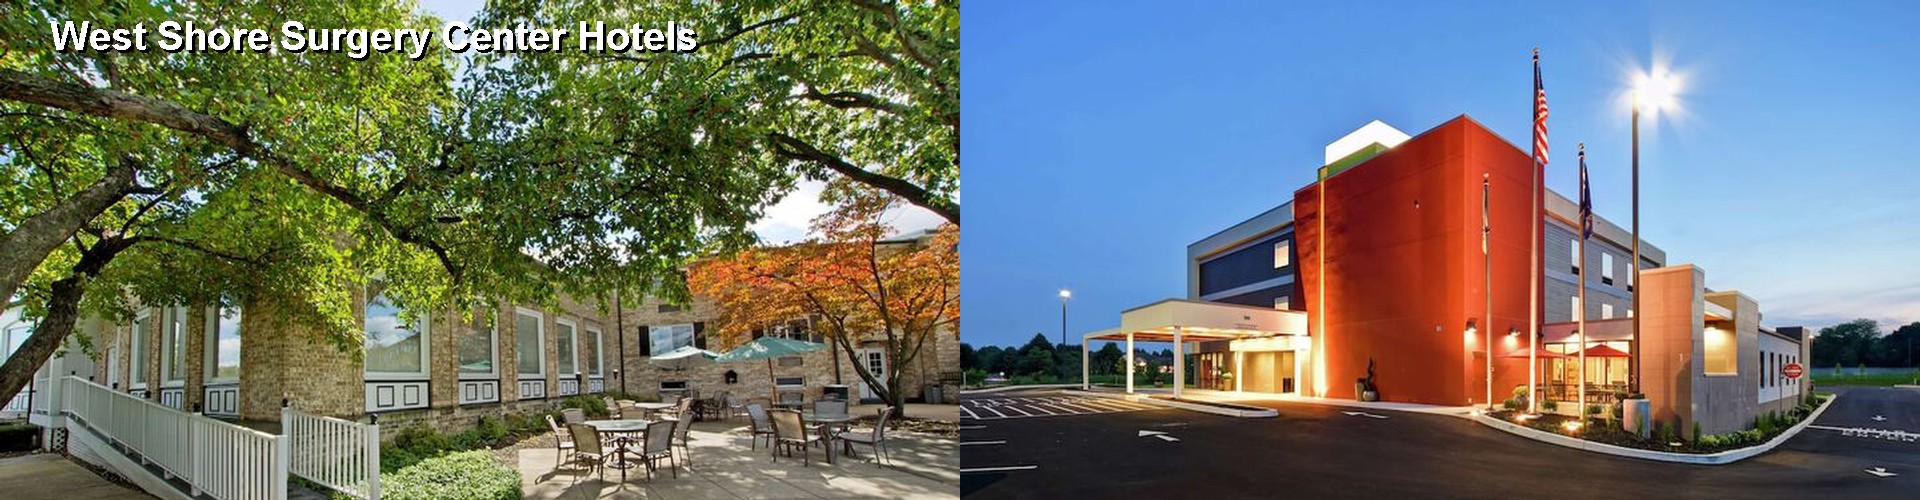 5 Best Hotels near West Shore Surgery Center